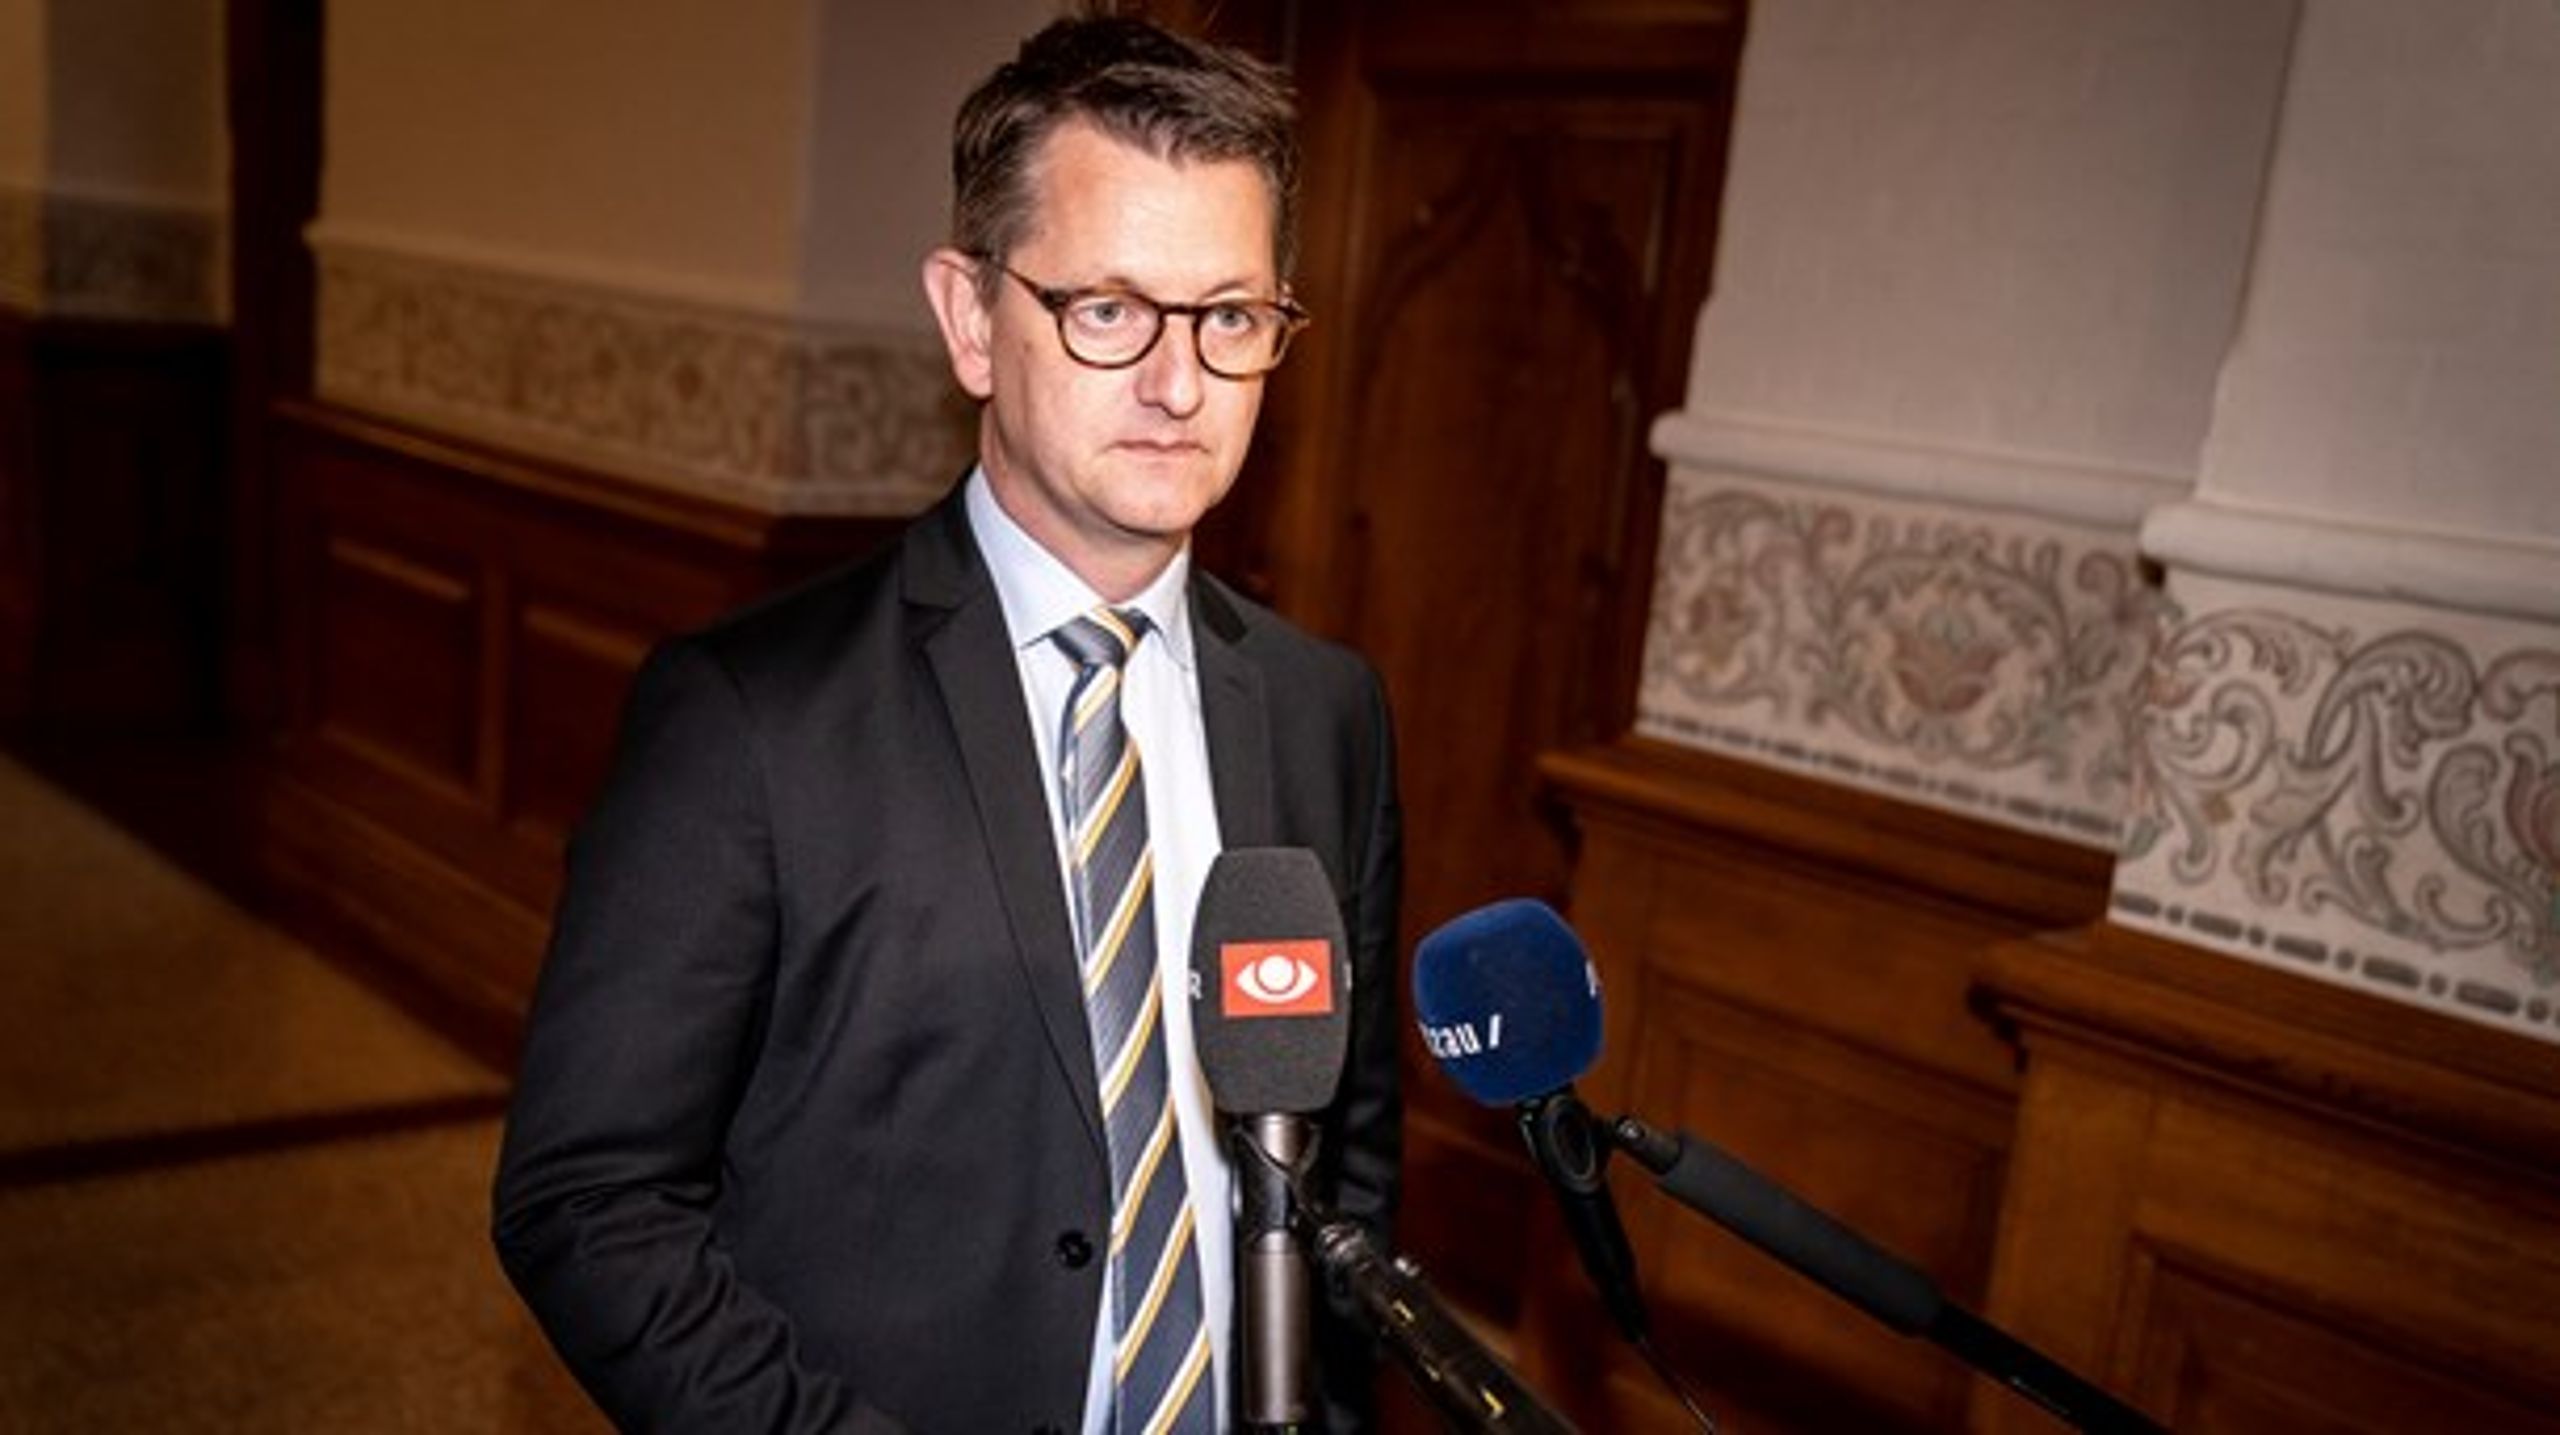 Venstres erhvervsordfører, Torsten Schack Pedersen, kræver de selvstændiges kompensationsordning sidestillet med lønmodtagernes.